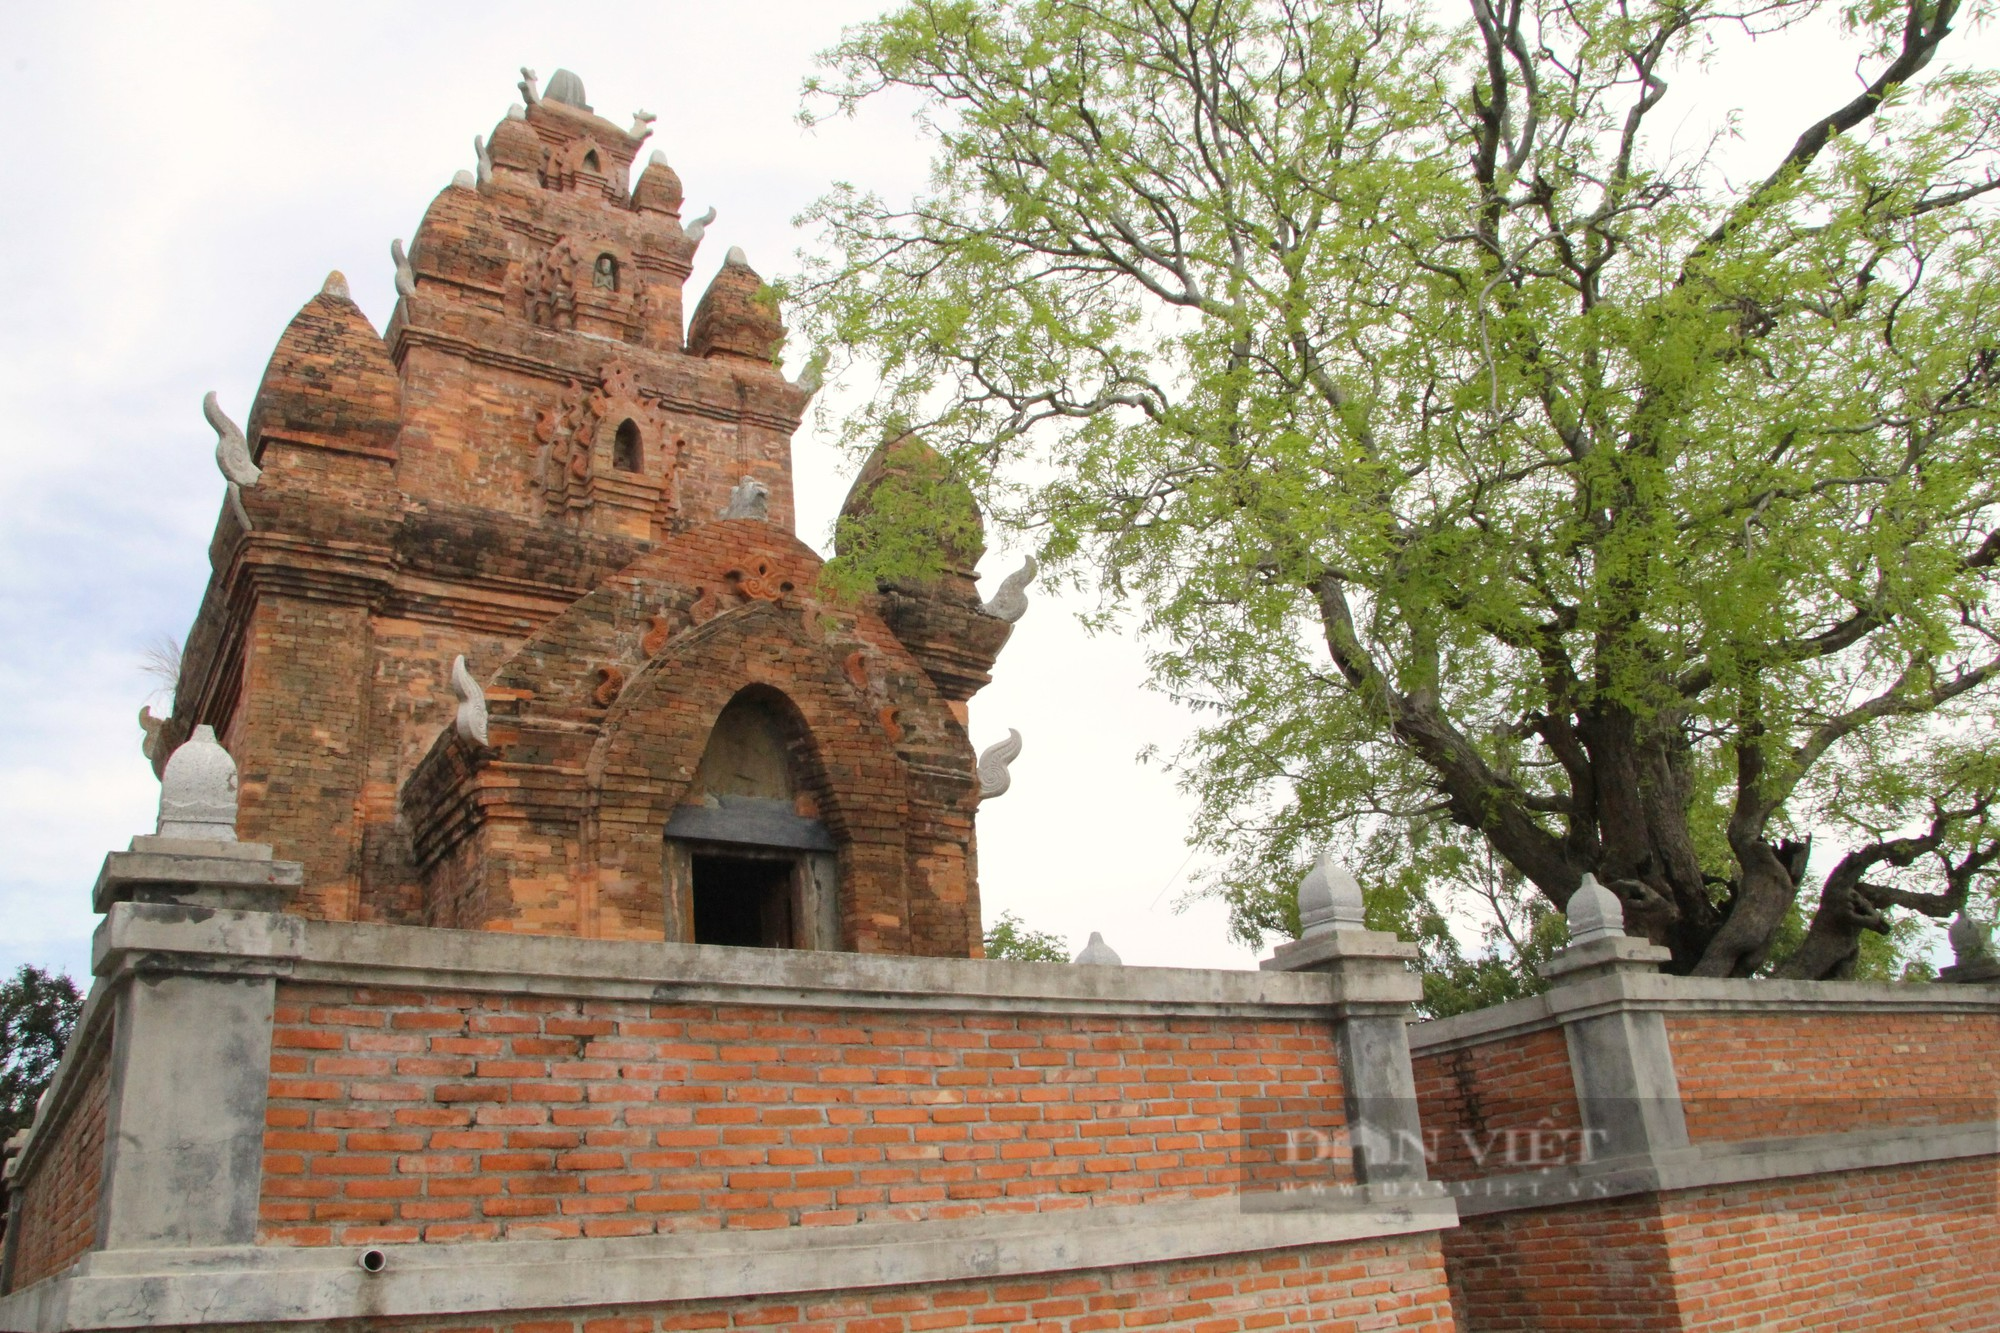 Bí ẩn bảo vật quốc gia bên trong tháp Chăm thờ vị vua cuối cùng của vương quốc Chămpa ở Ninh Thuận - Ảnh 10.